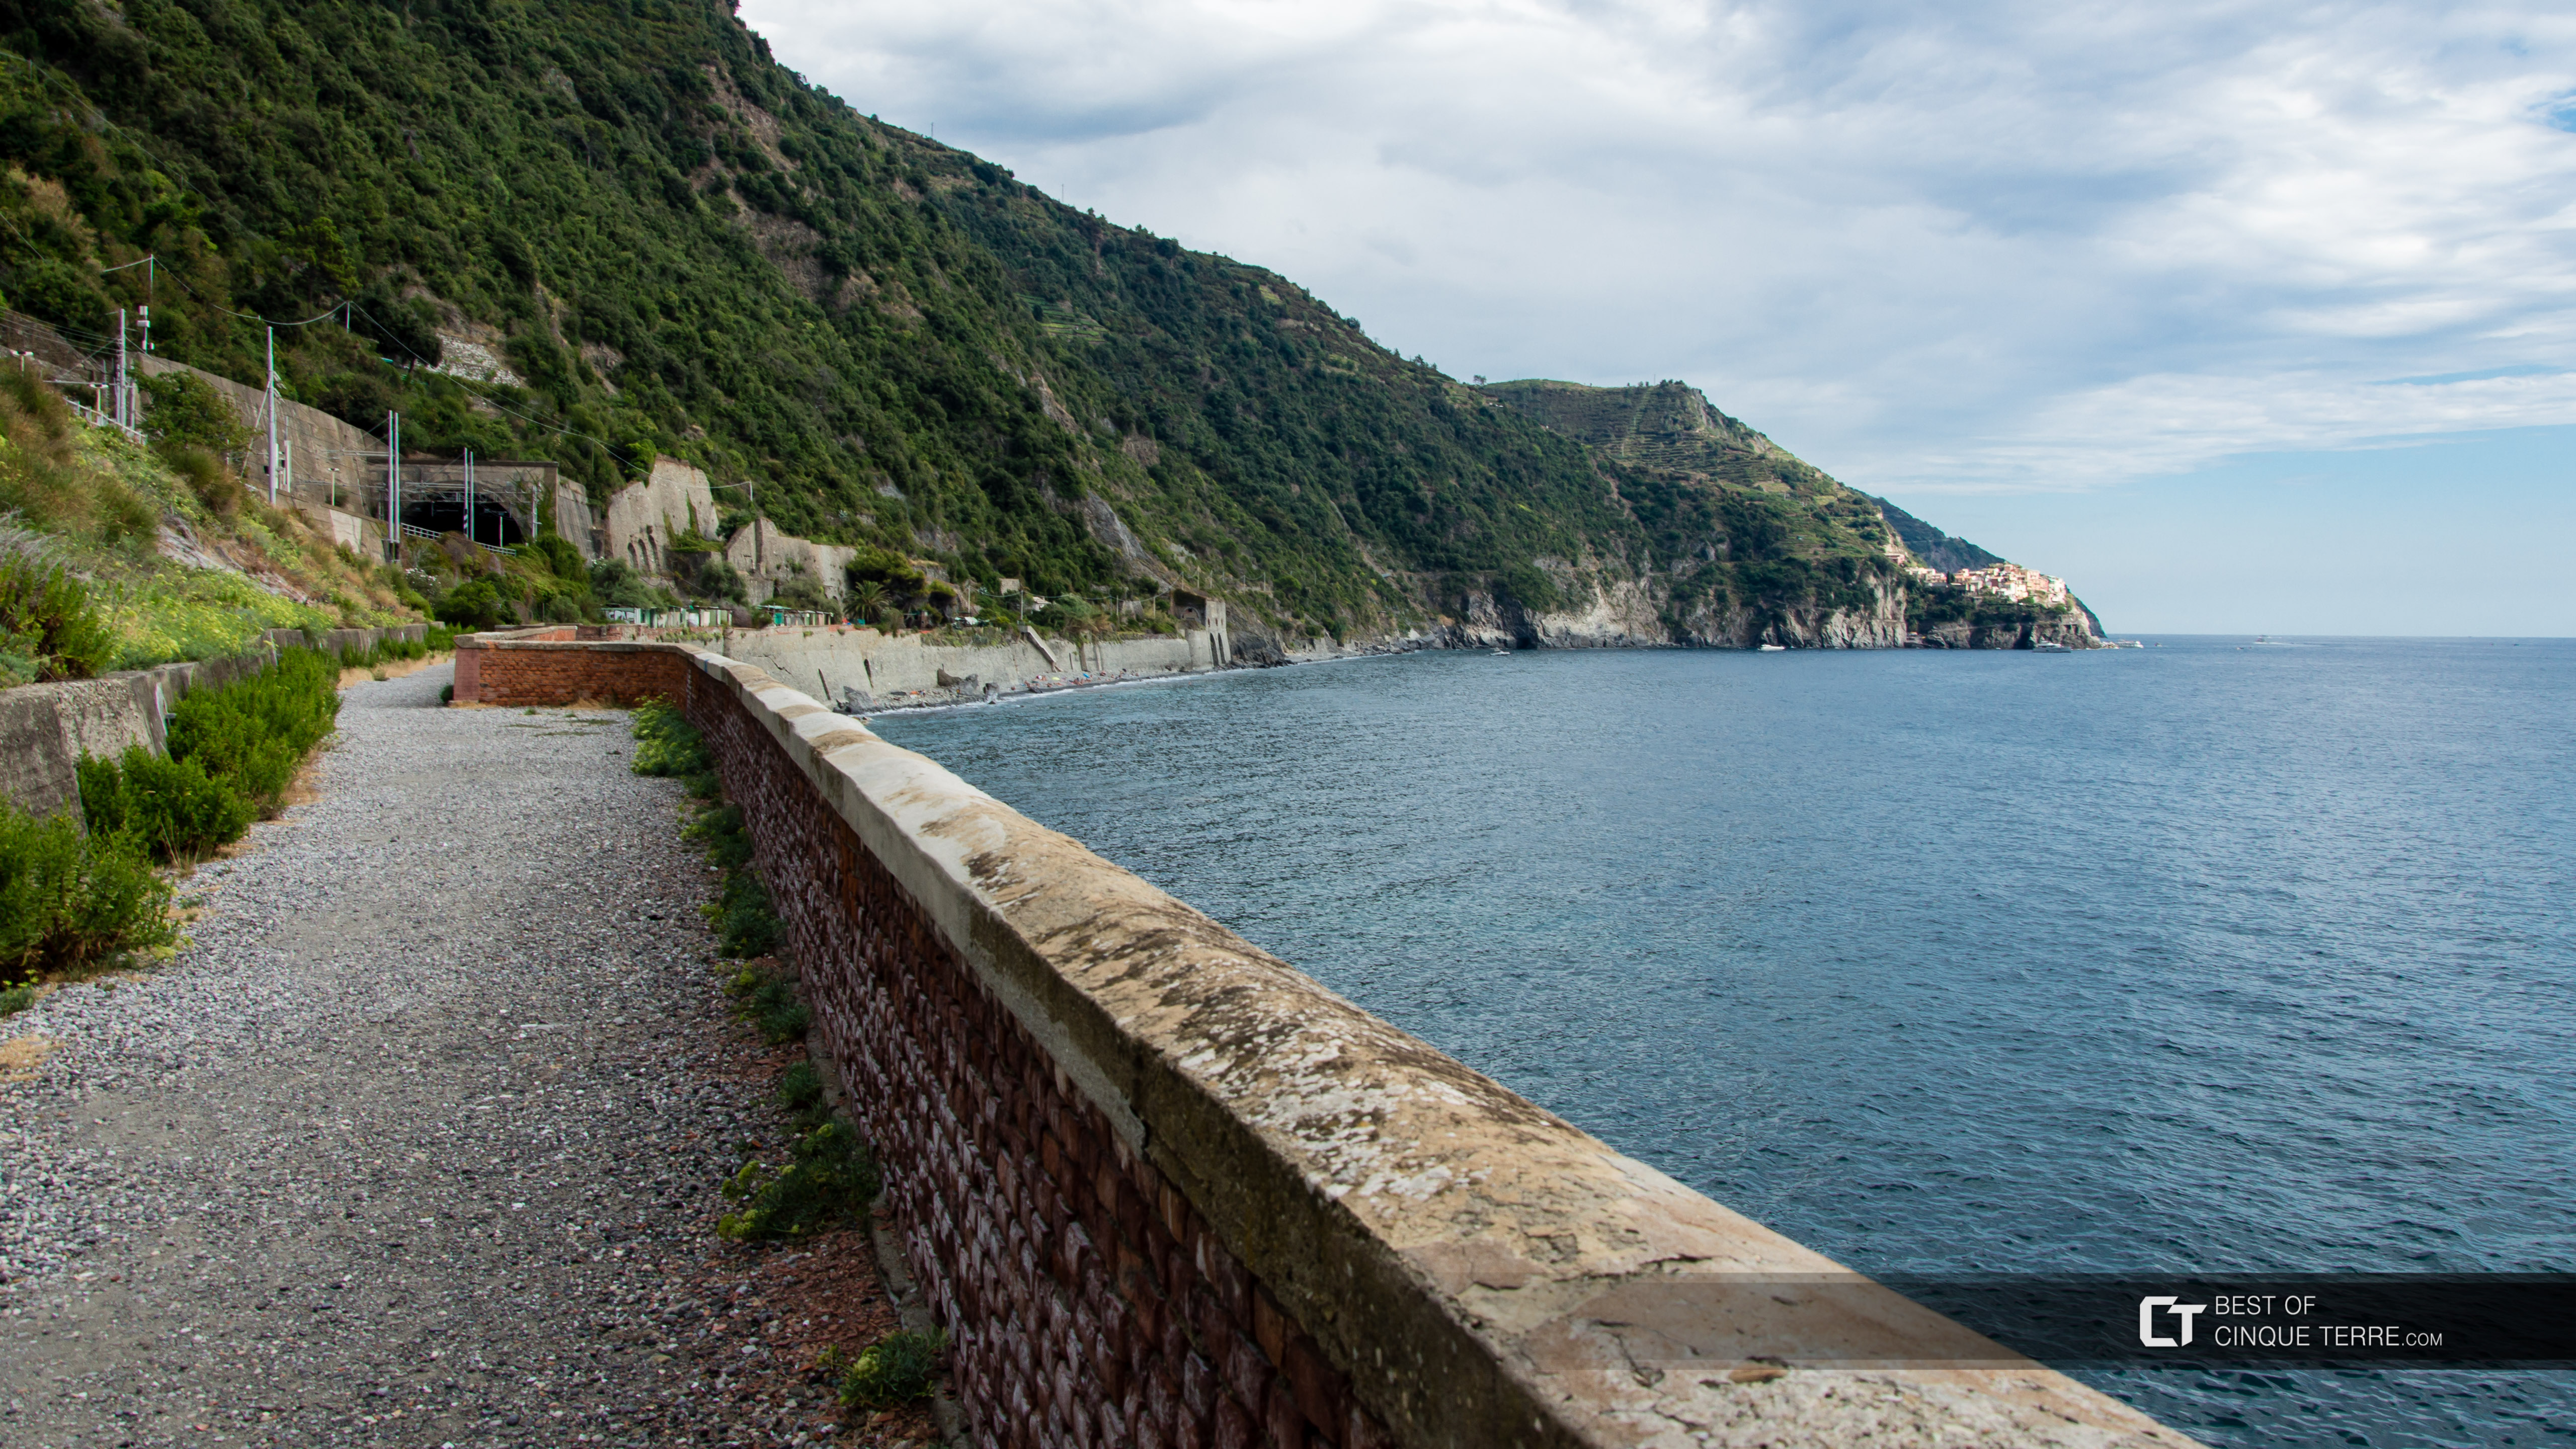 Lazurowa Ścieżka z Cornigli do Manaroli, Trasy piesze, Cinque Terre, Włochy